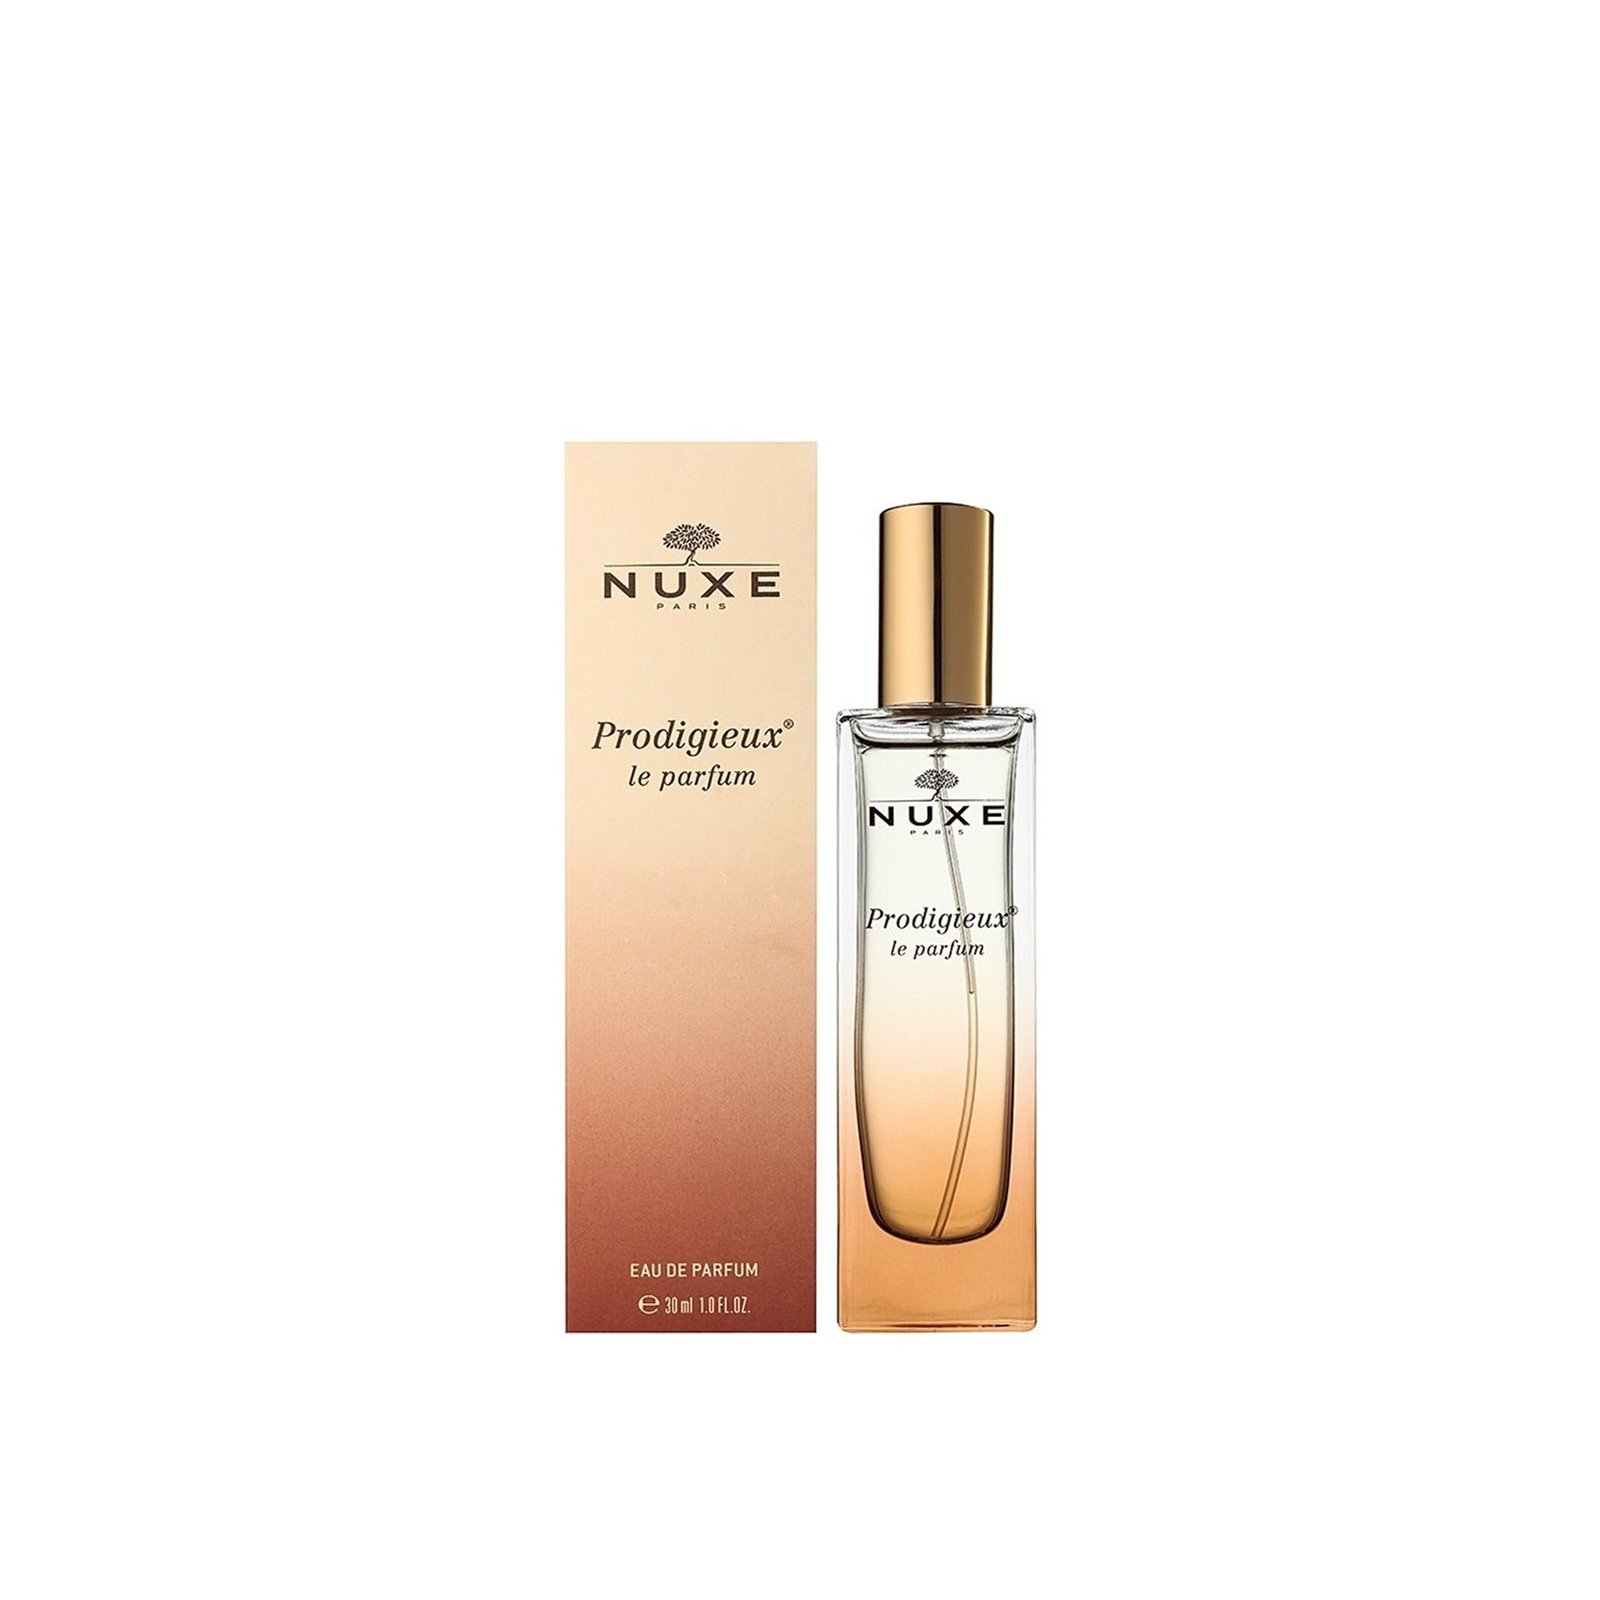 NUXE Prodigieux le Parfum 30ml (1.01fl oz)